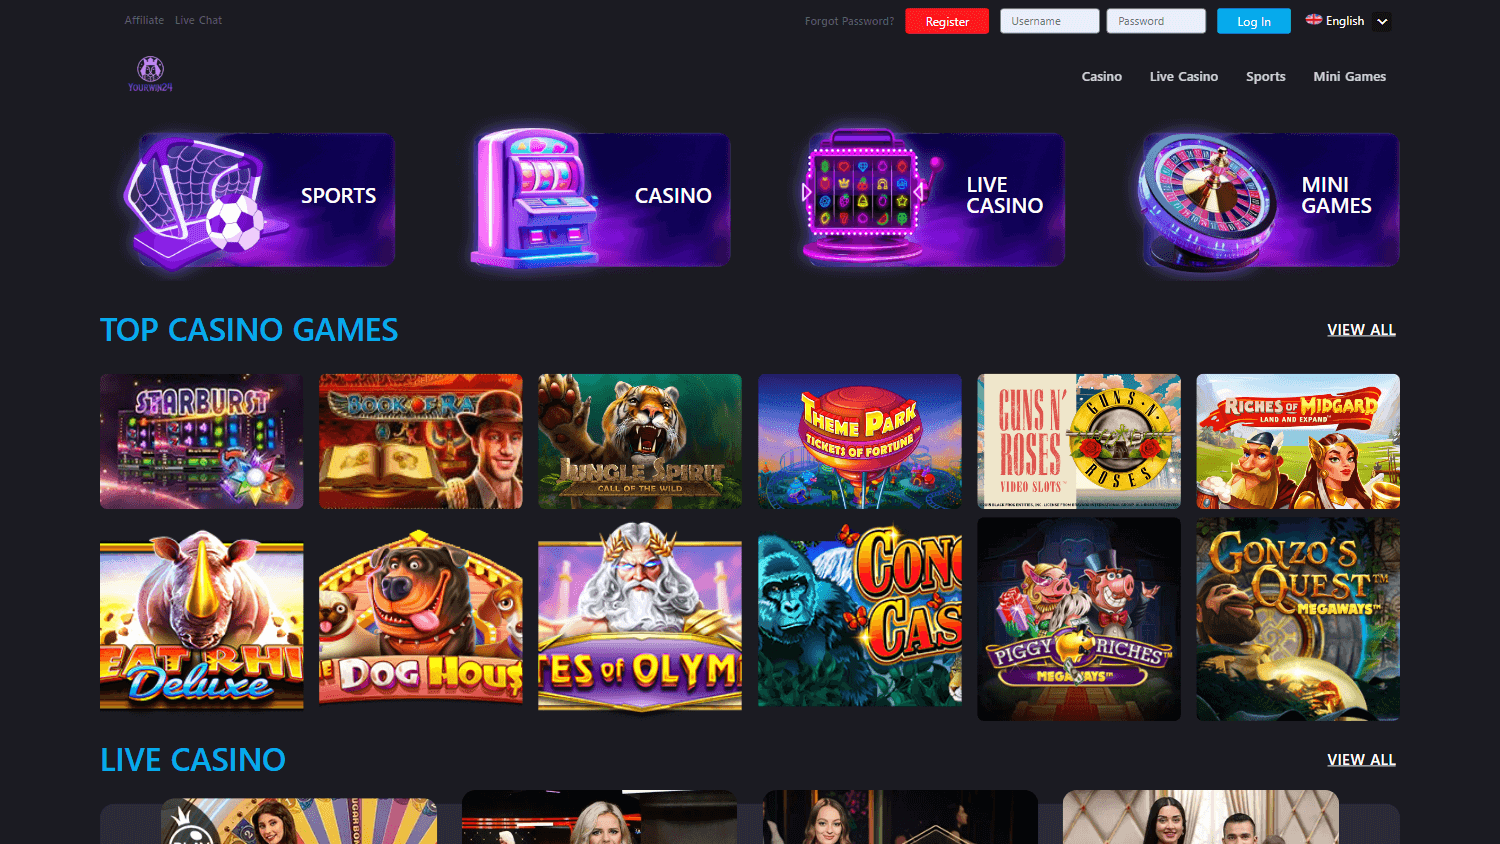 yourwin24_casino_homepage_desktop